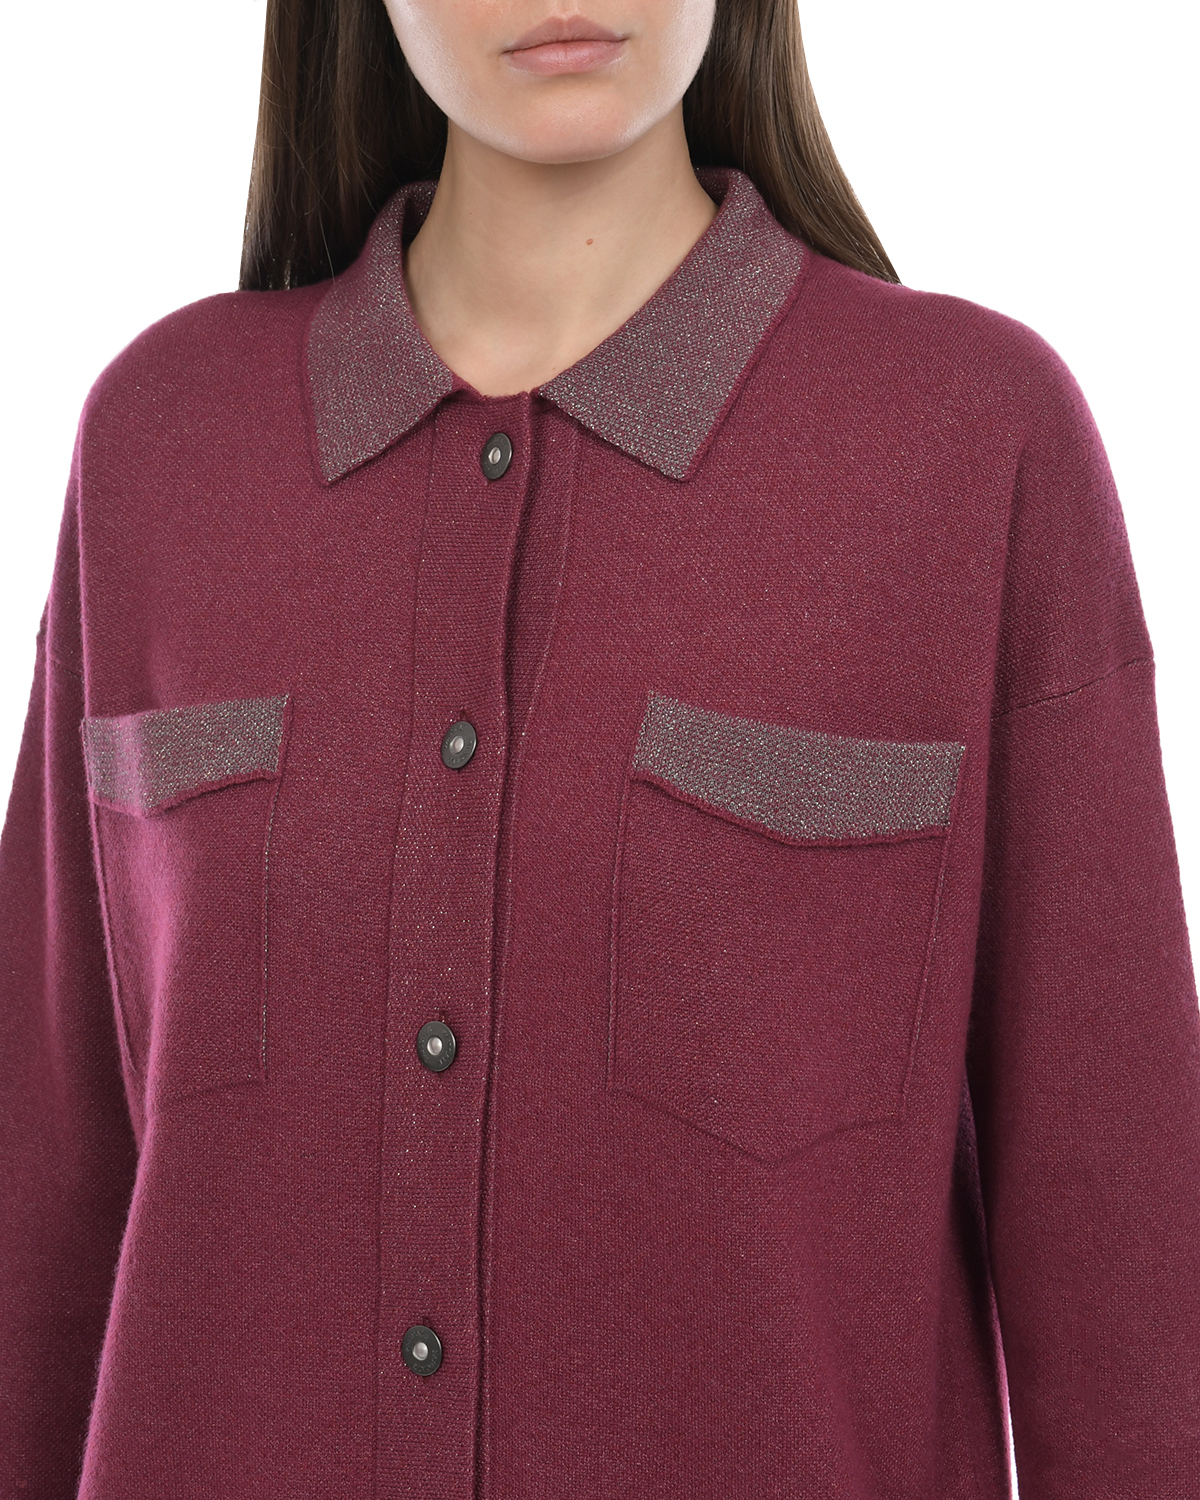 Бордовая рубашка из шерсти и шелка Panicale, размер 44, цвет бордовый - фото 7